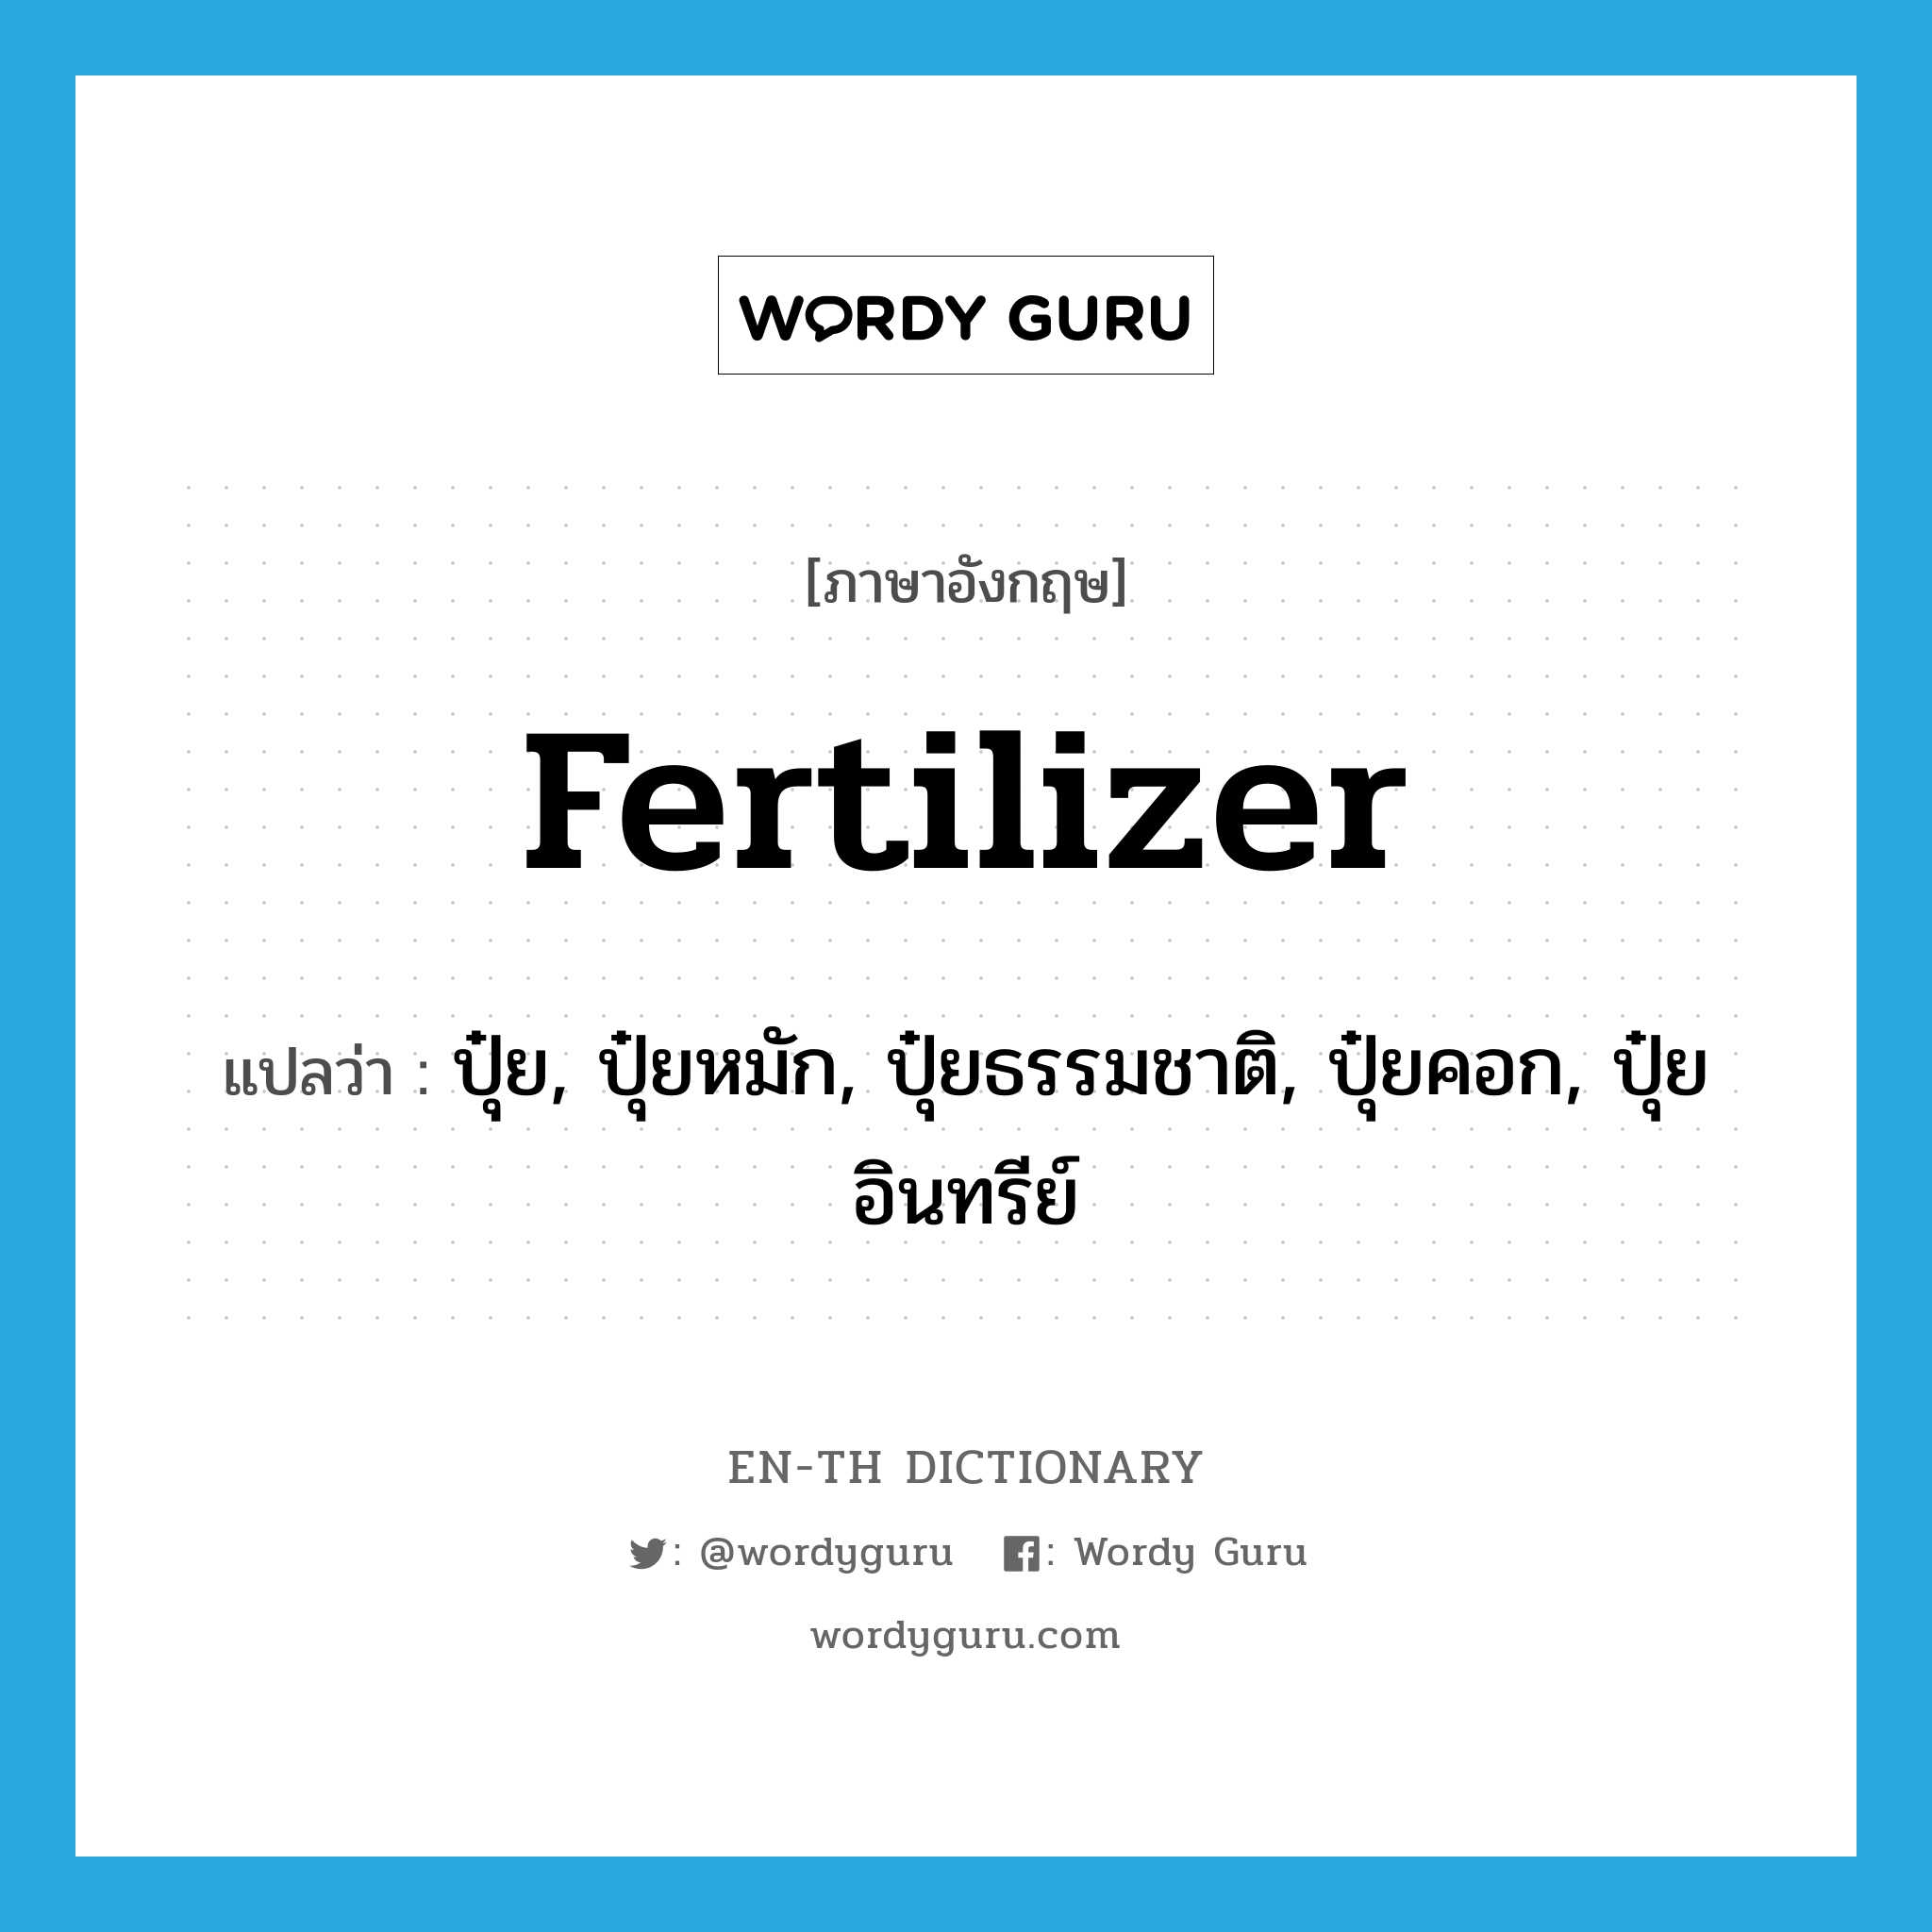 fertilizer แปลว่า?, คำศัพท์ภาษาอังกฤษ fertilizer แปลว่า ปุ๋ย, ปุ๋ยหมัก, ปุ๋ยธรรมชาติ, ปุ๋ยคอก, ปุ๋ยอินทรีย์ ประเภท N หมวด N